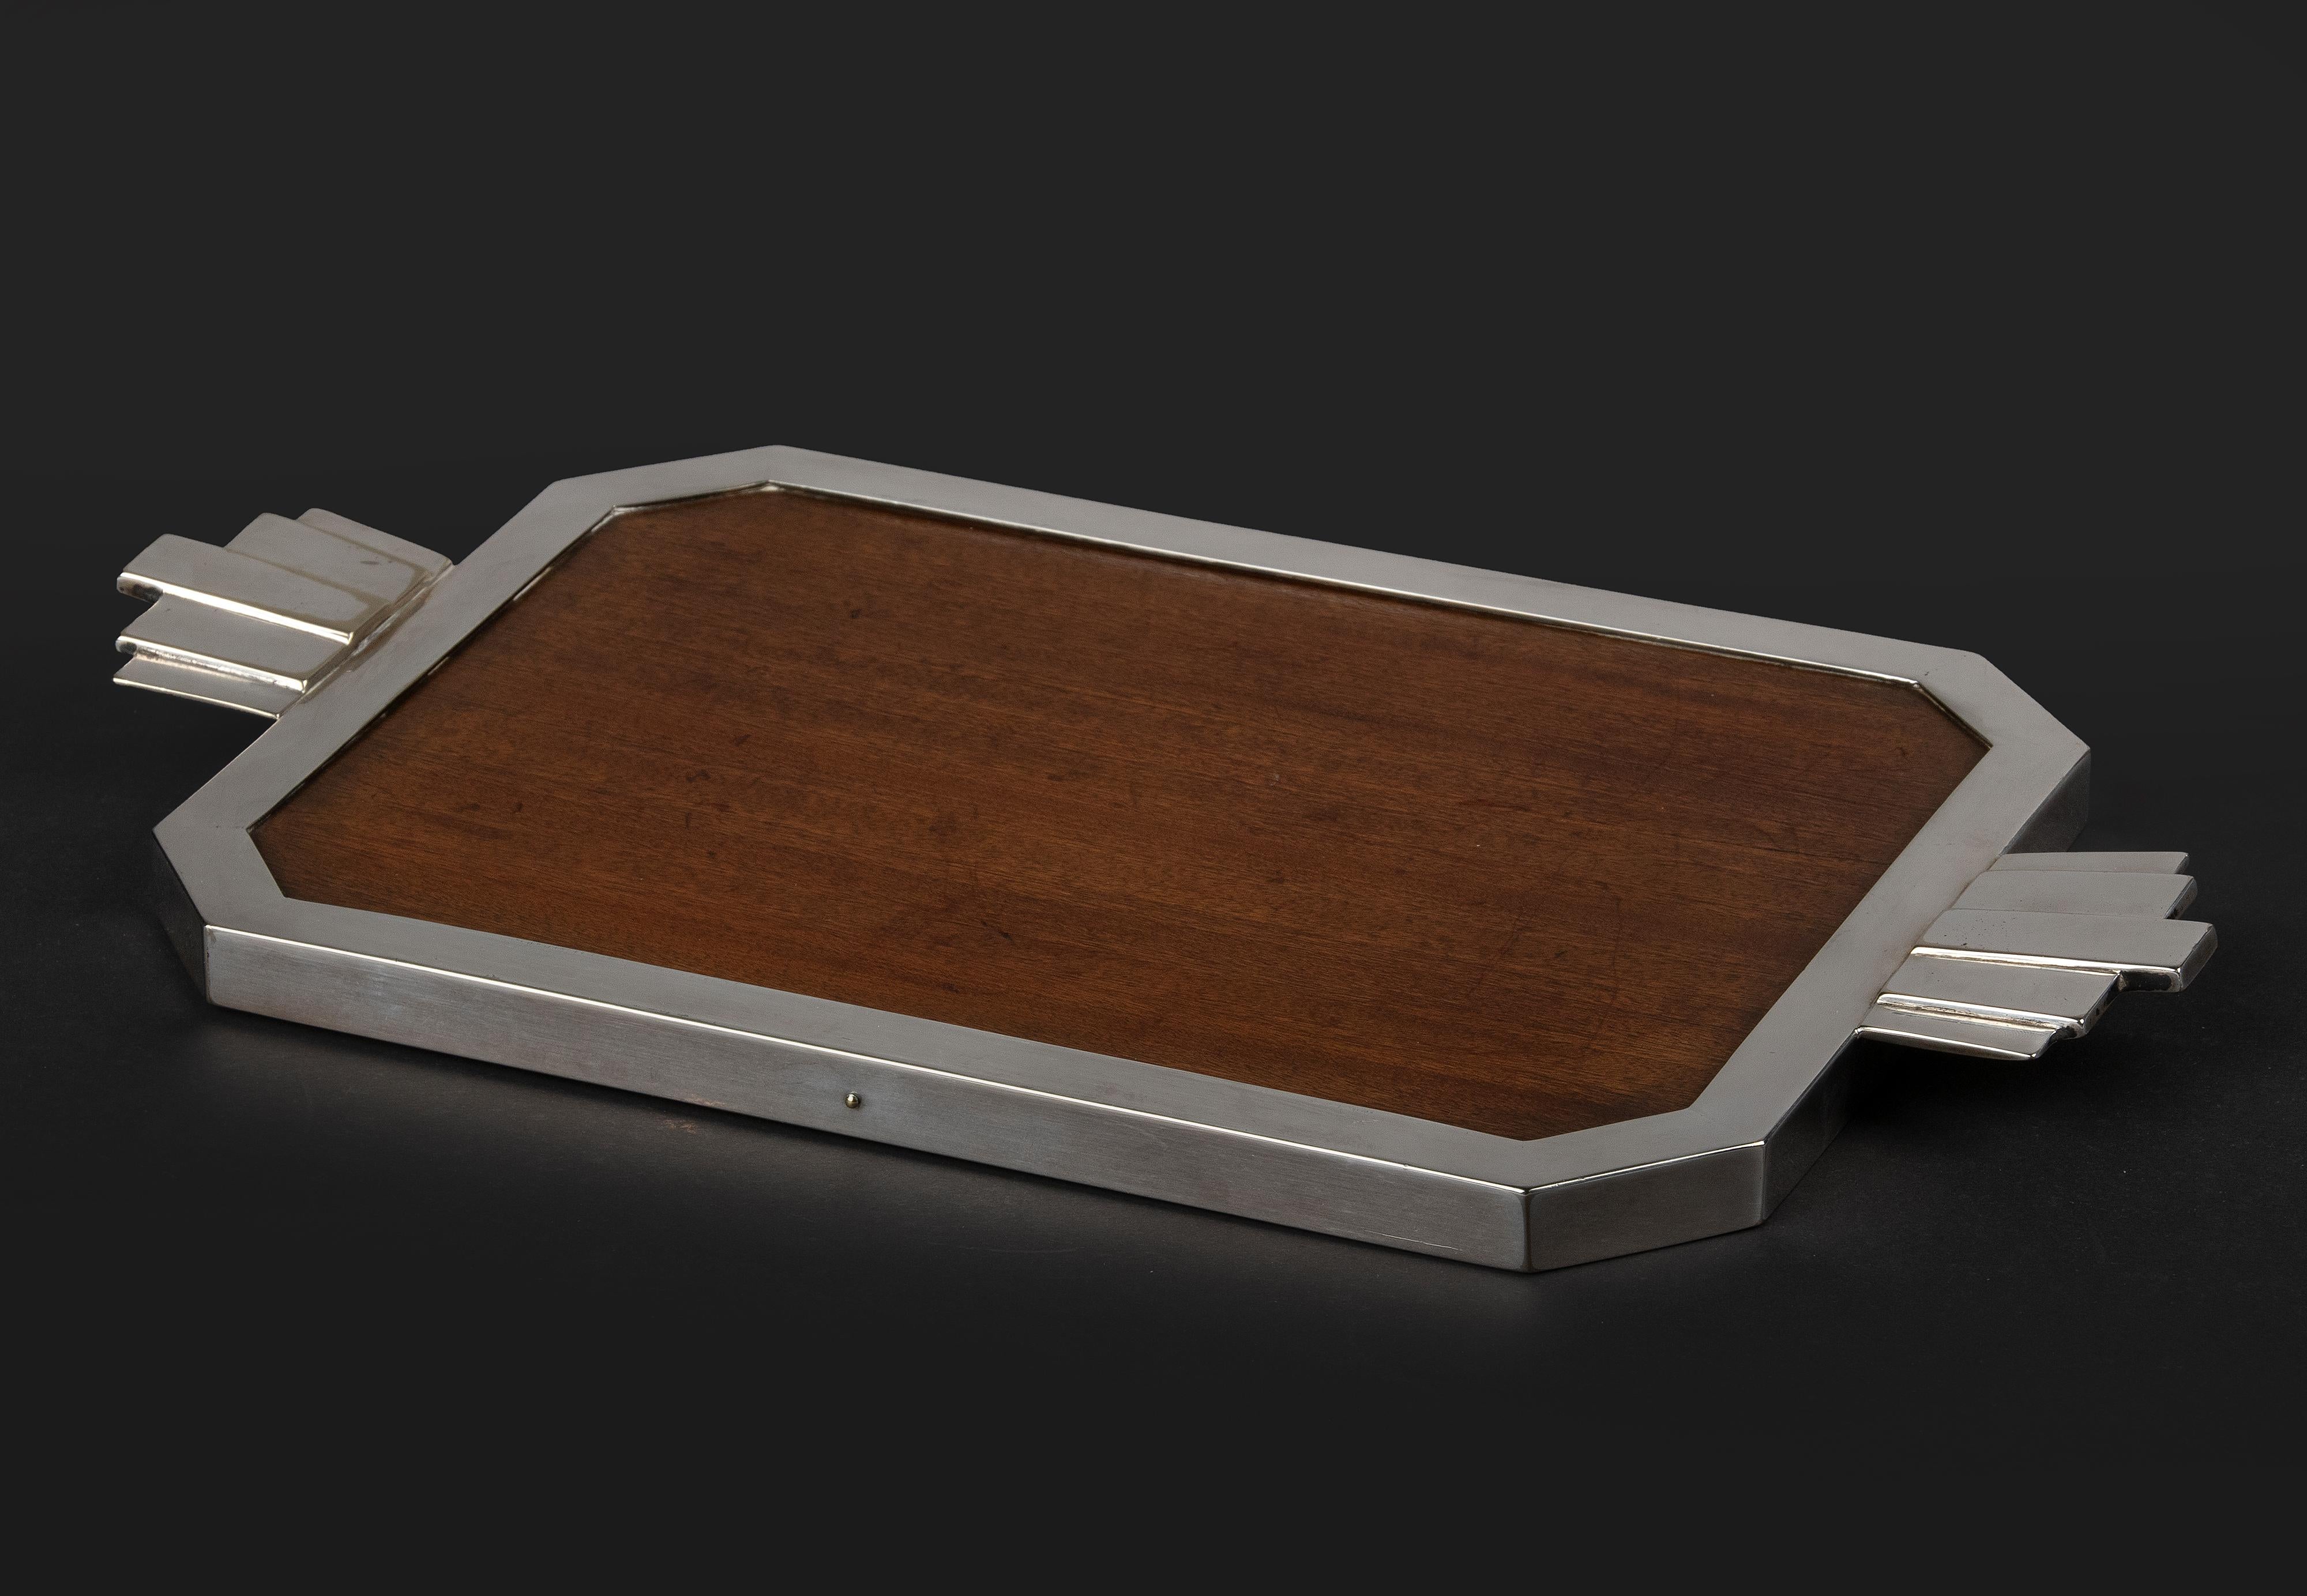 Art Deco Tablett, mit versilbertem Rand und Griffen. Das zentrale Stück ist aus Mahagoni. Das Tablett ist mit kleinen Punzen 